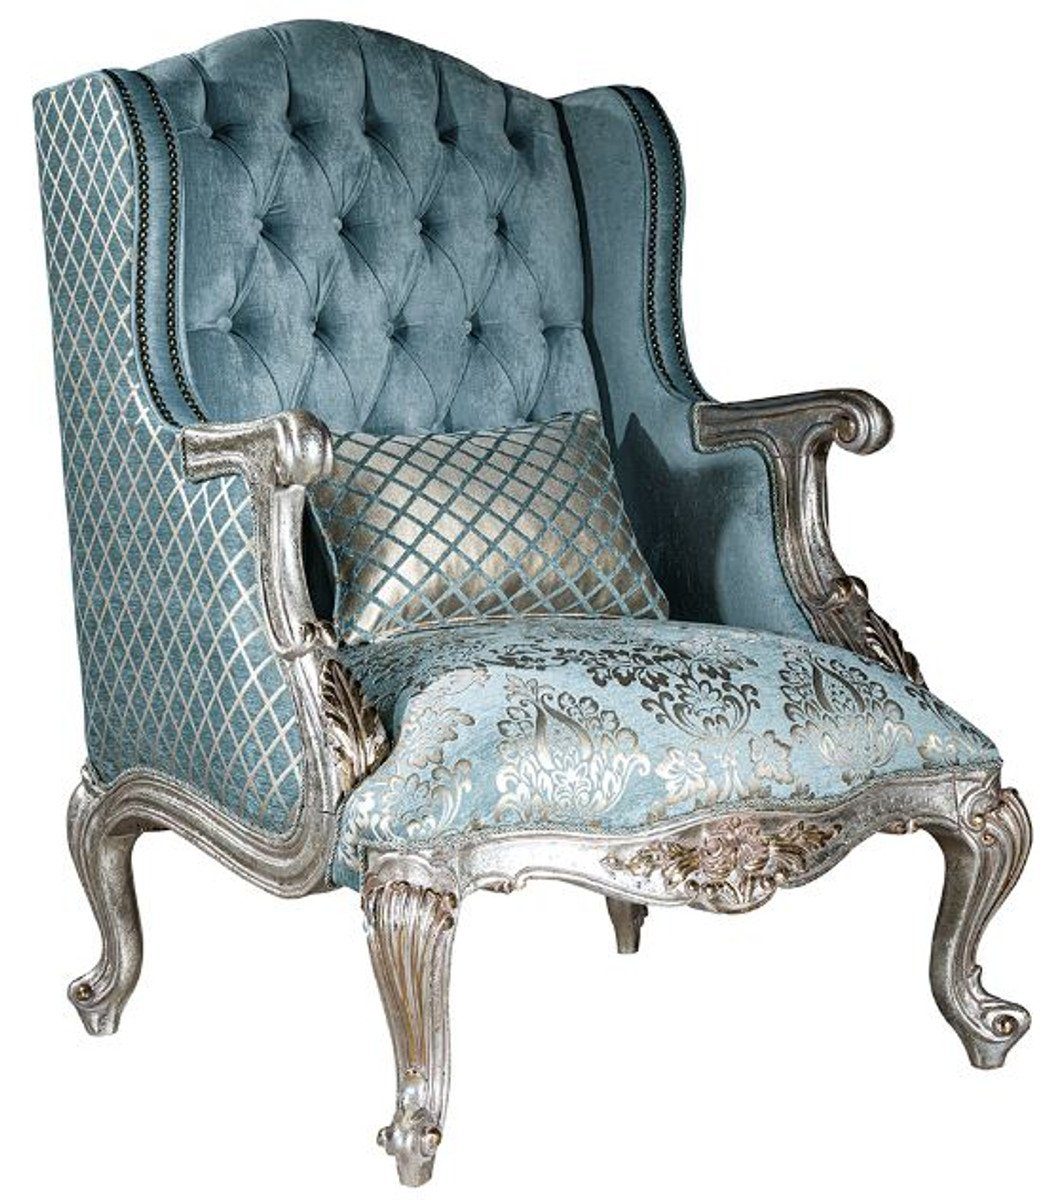 Casa Padrino Sessel Luxus Barock Ohrensessel Hellblau / Silber / Gold 20 x  20 x H. 20 cm   Wohnzimmer Sessel mit elegantem Muster und dekorativem ...